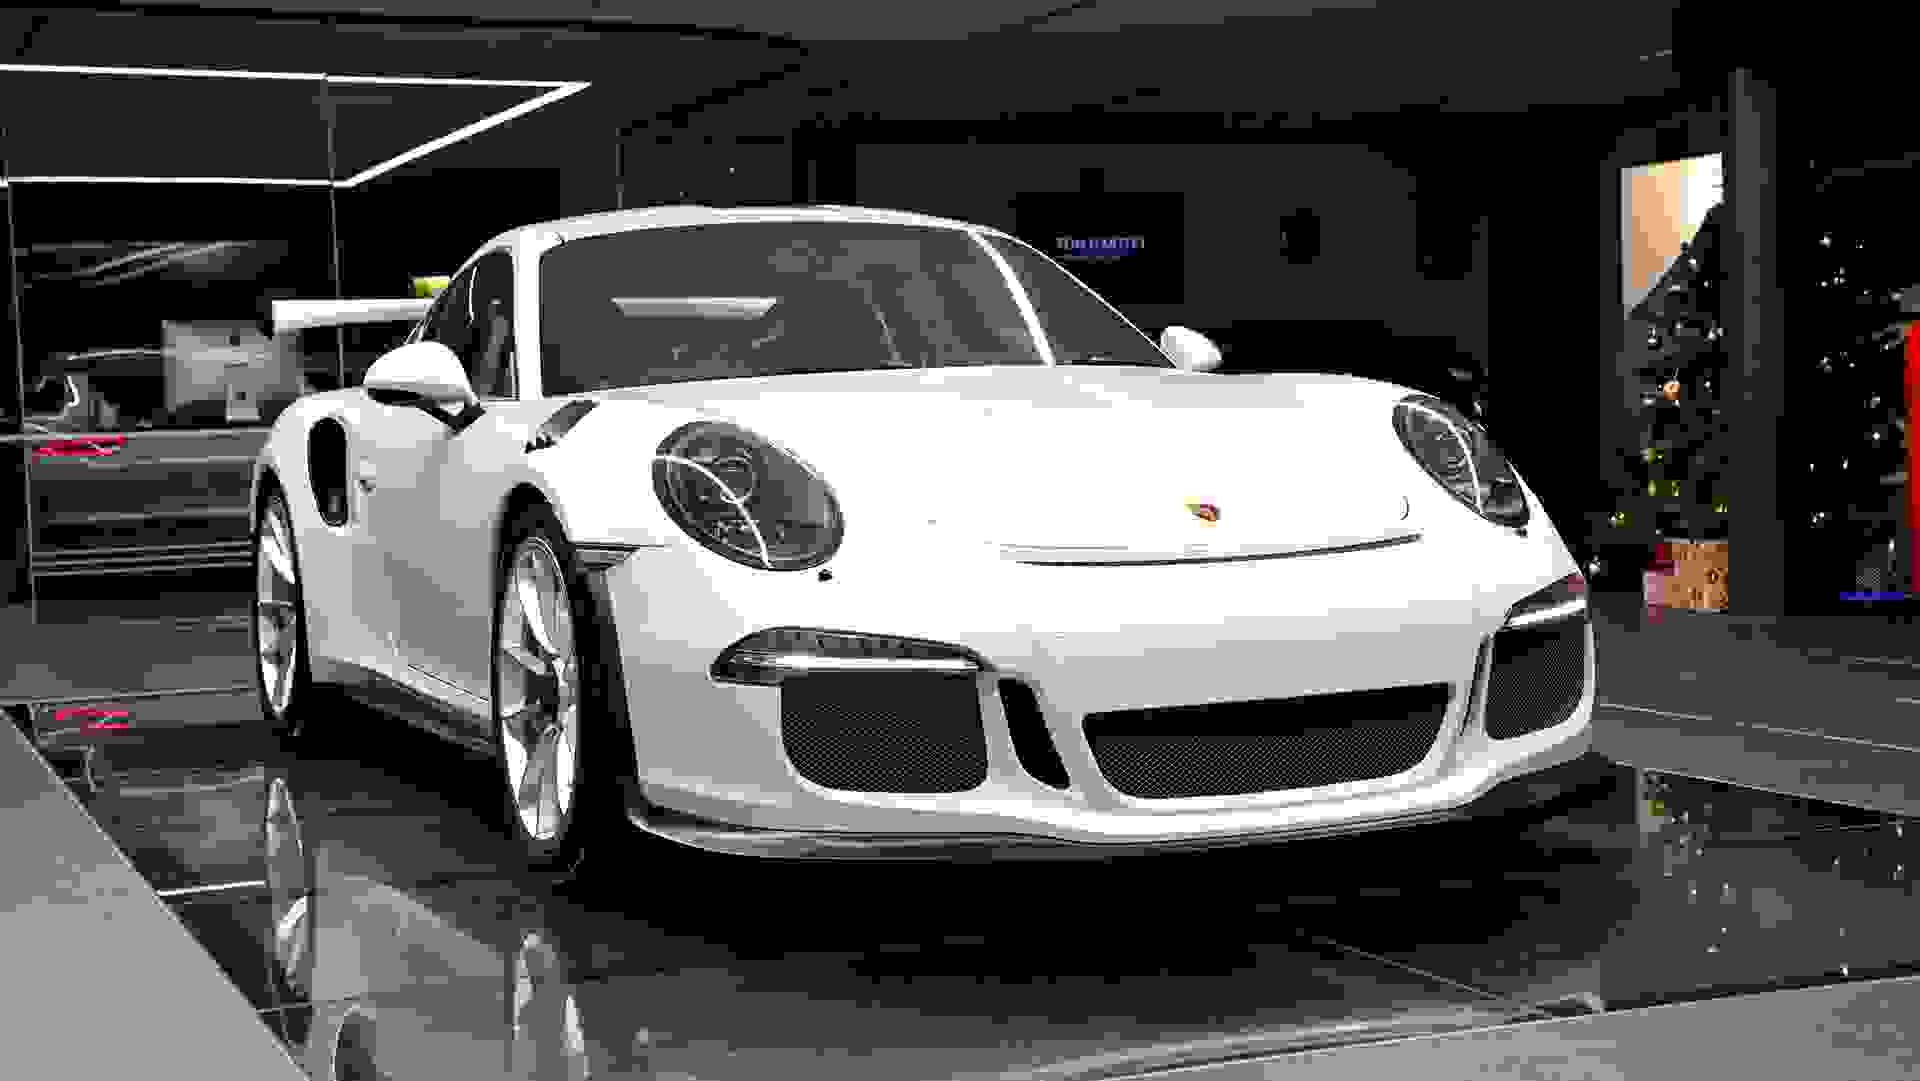 Porsche 911 Photo e5b59dbe-8248-4874-9b91-c3cd1efc9725.jpg